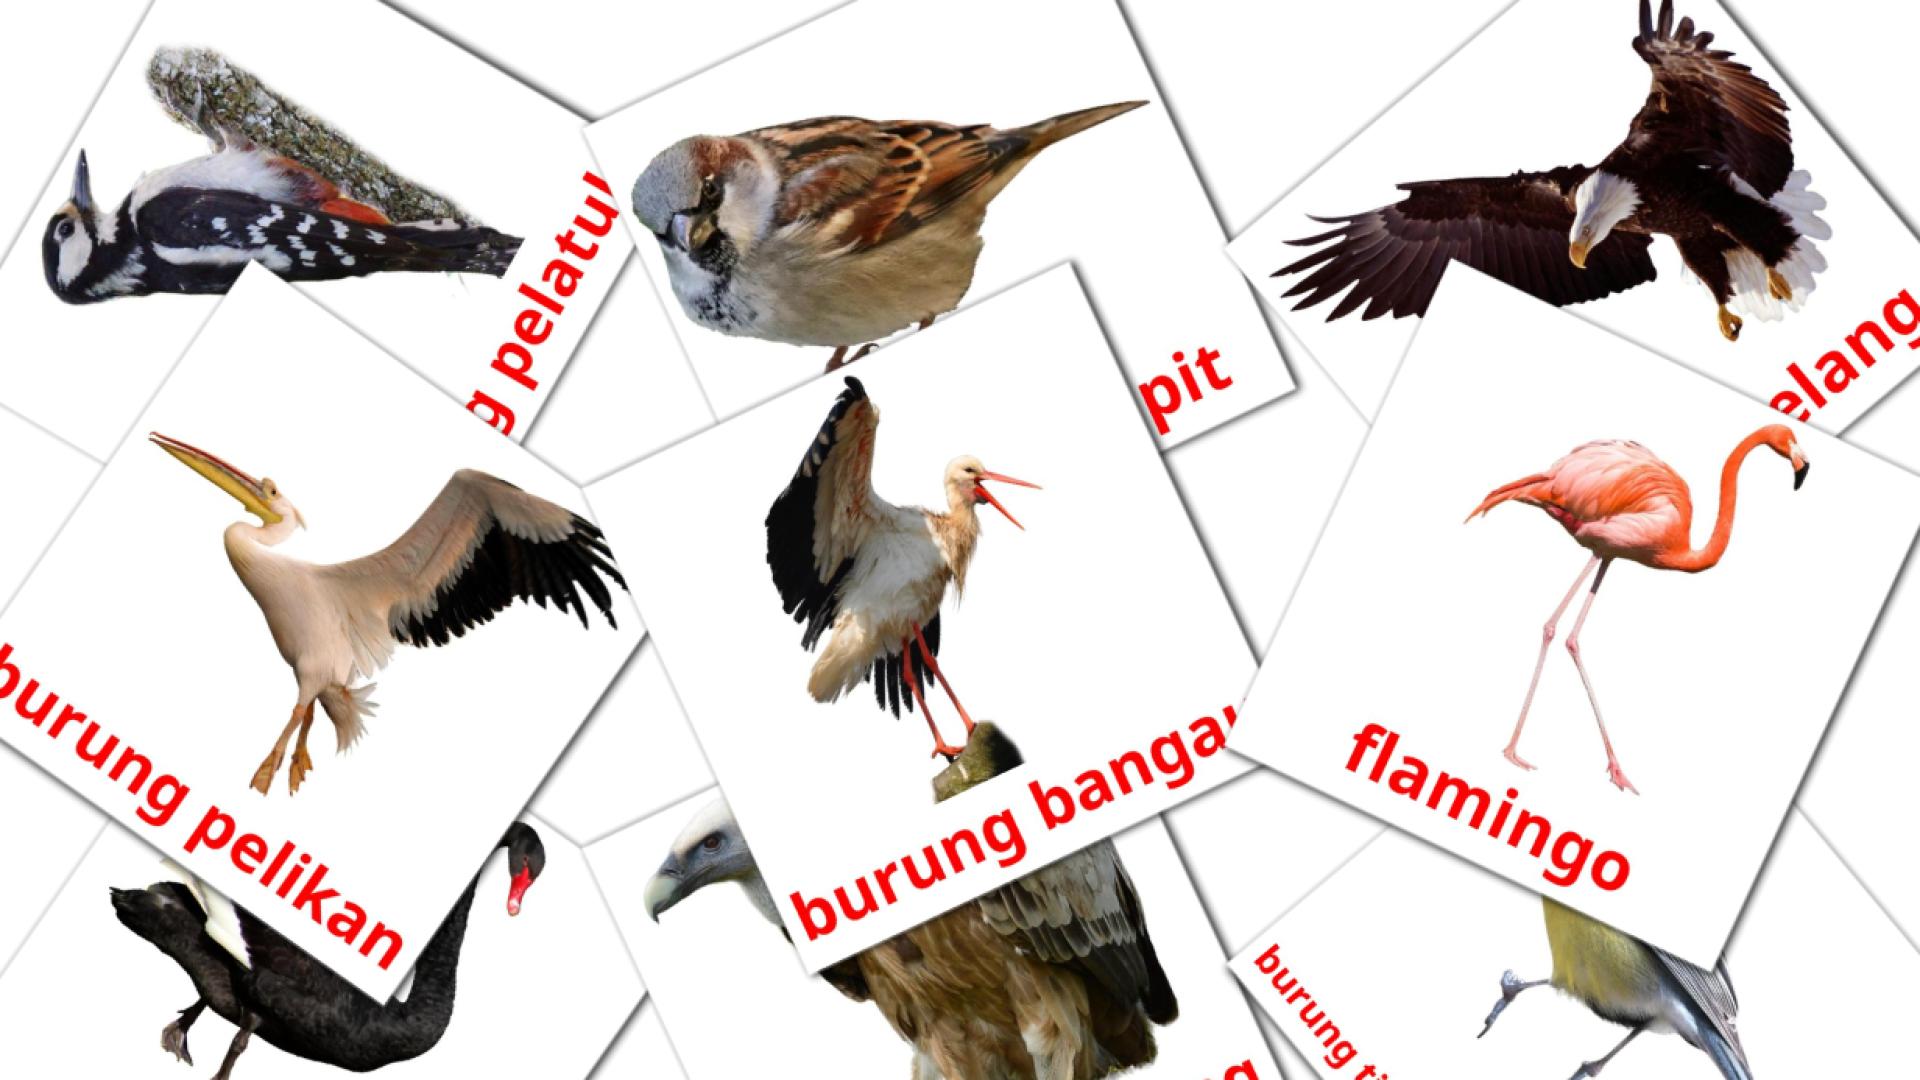 18 Bildkarten für Burung liar